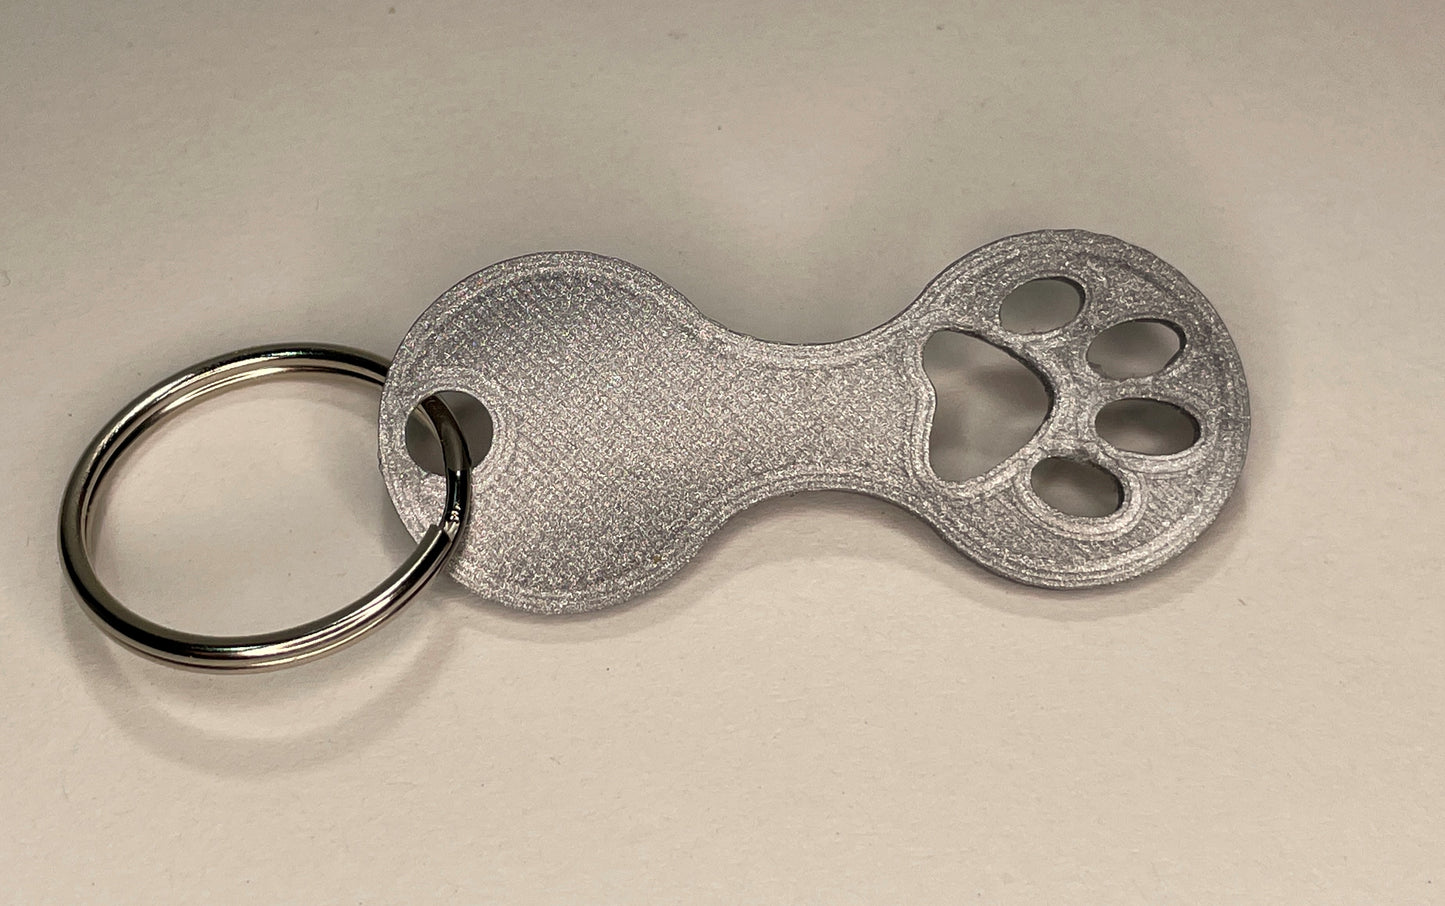 Katzenpfoten-Zauber: Einkaufswagenlöser Schlüsselanhänger 3D-gedruckt - Überraschende Farbauswahl für Katzenliebhaber!